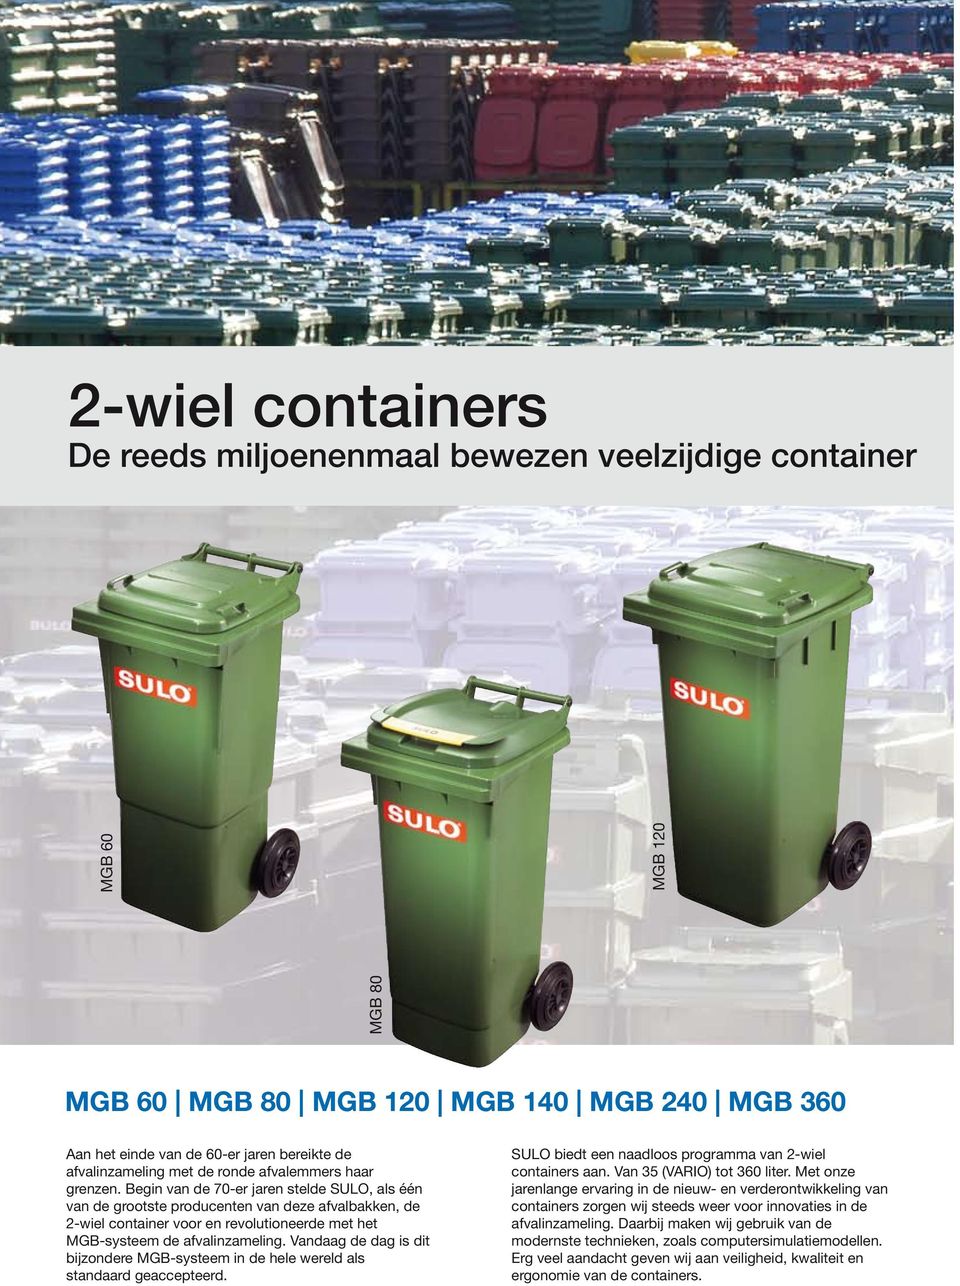 Begin van de 70-er jaren stelde SULO, als één van de grootste producenten van deze afvalbakken, de 2-wiel container voor en revolutioneerde met het MGB-systeem de afvalinzameling.